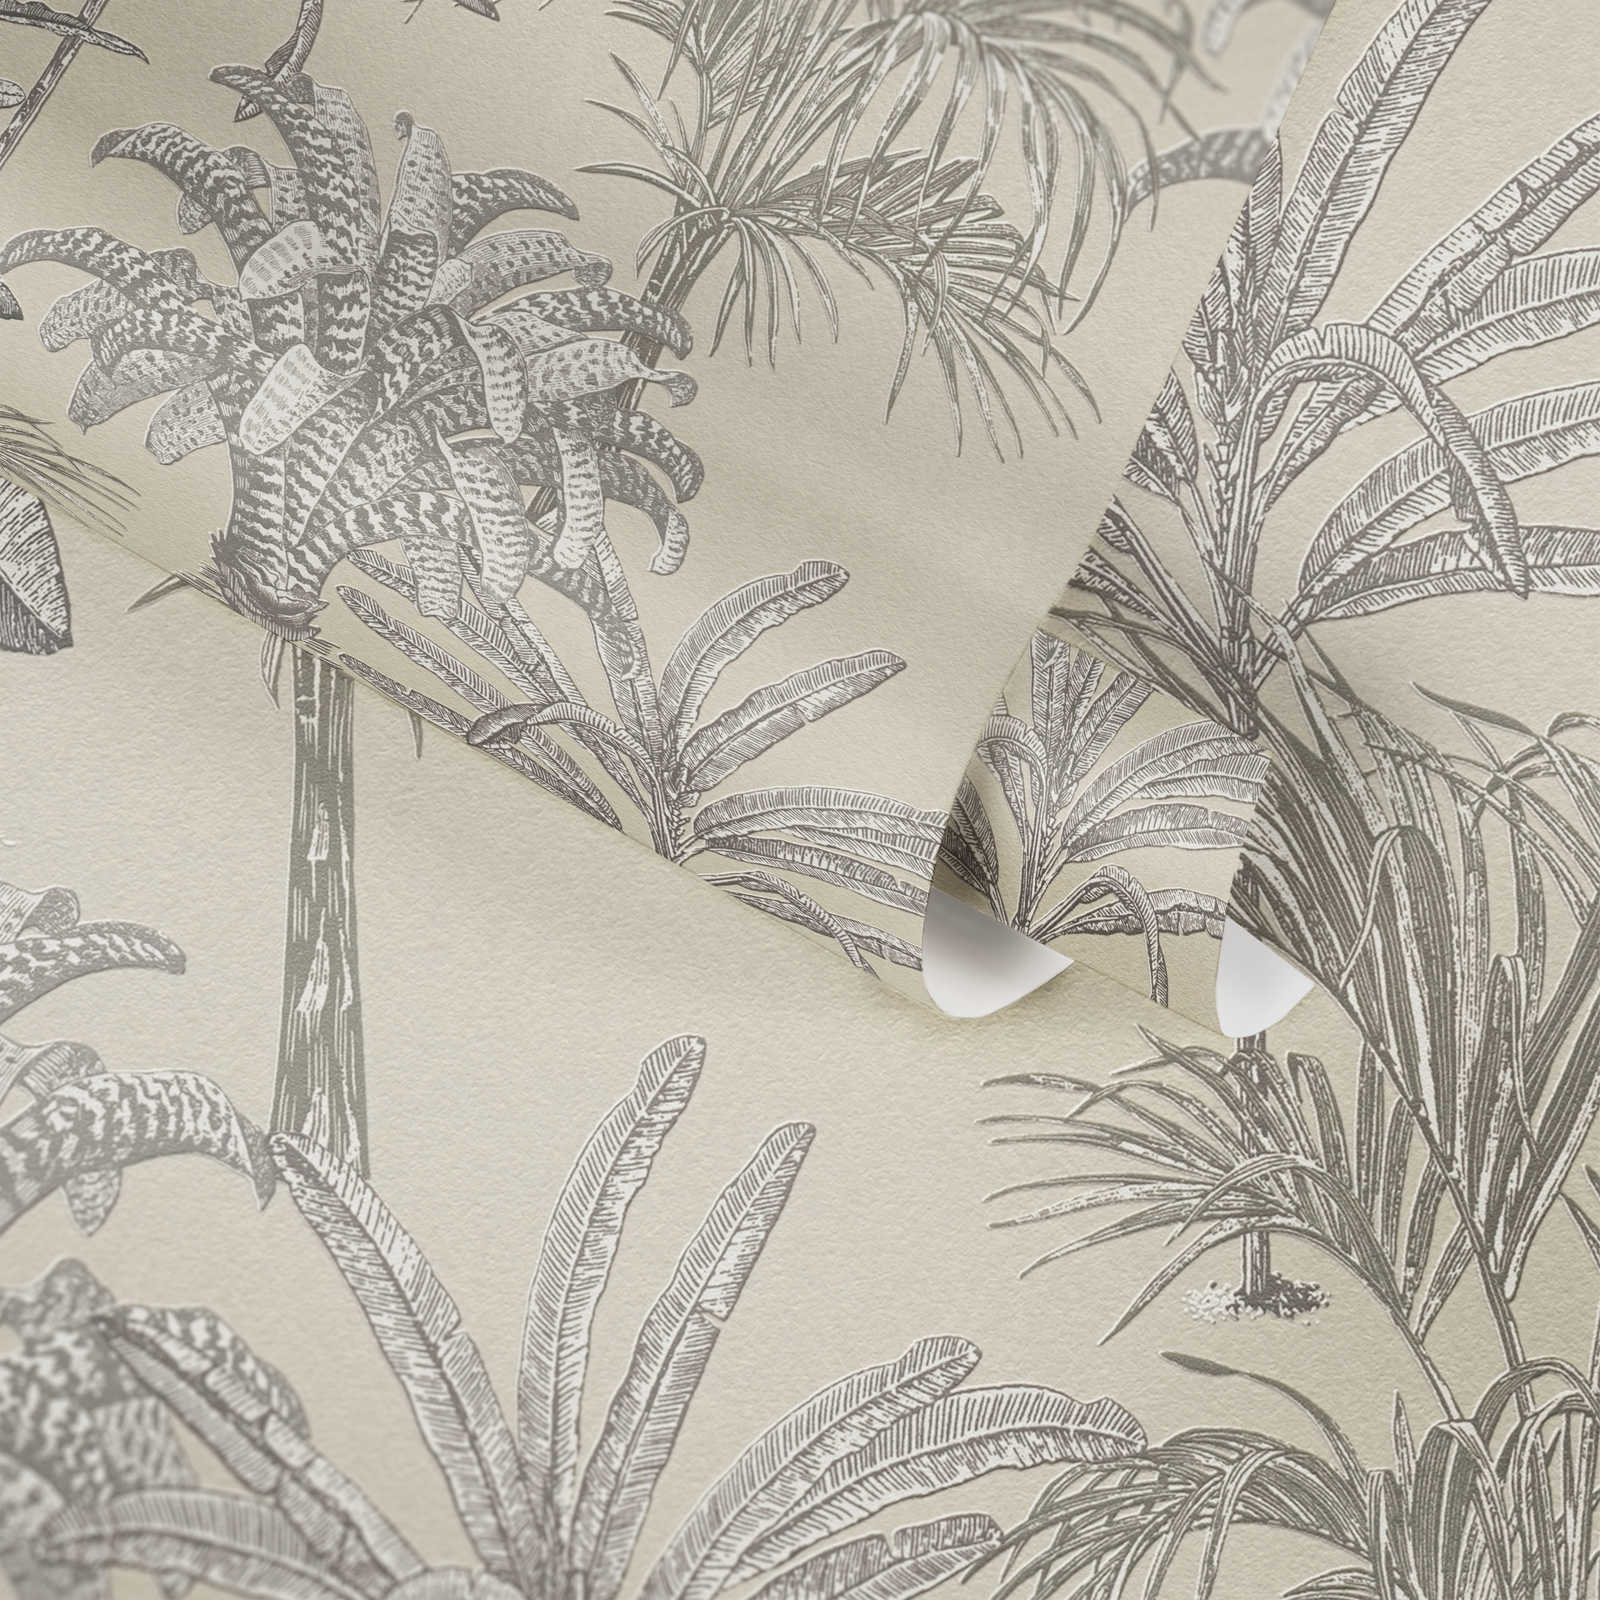             Palm wallpaper non-woven with structure & matt-gloss effect - cream
        